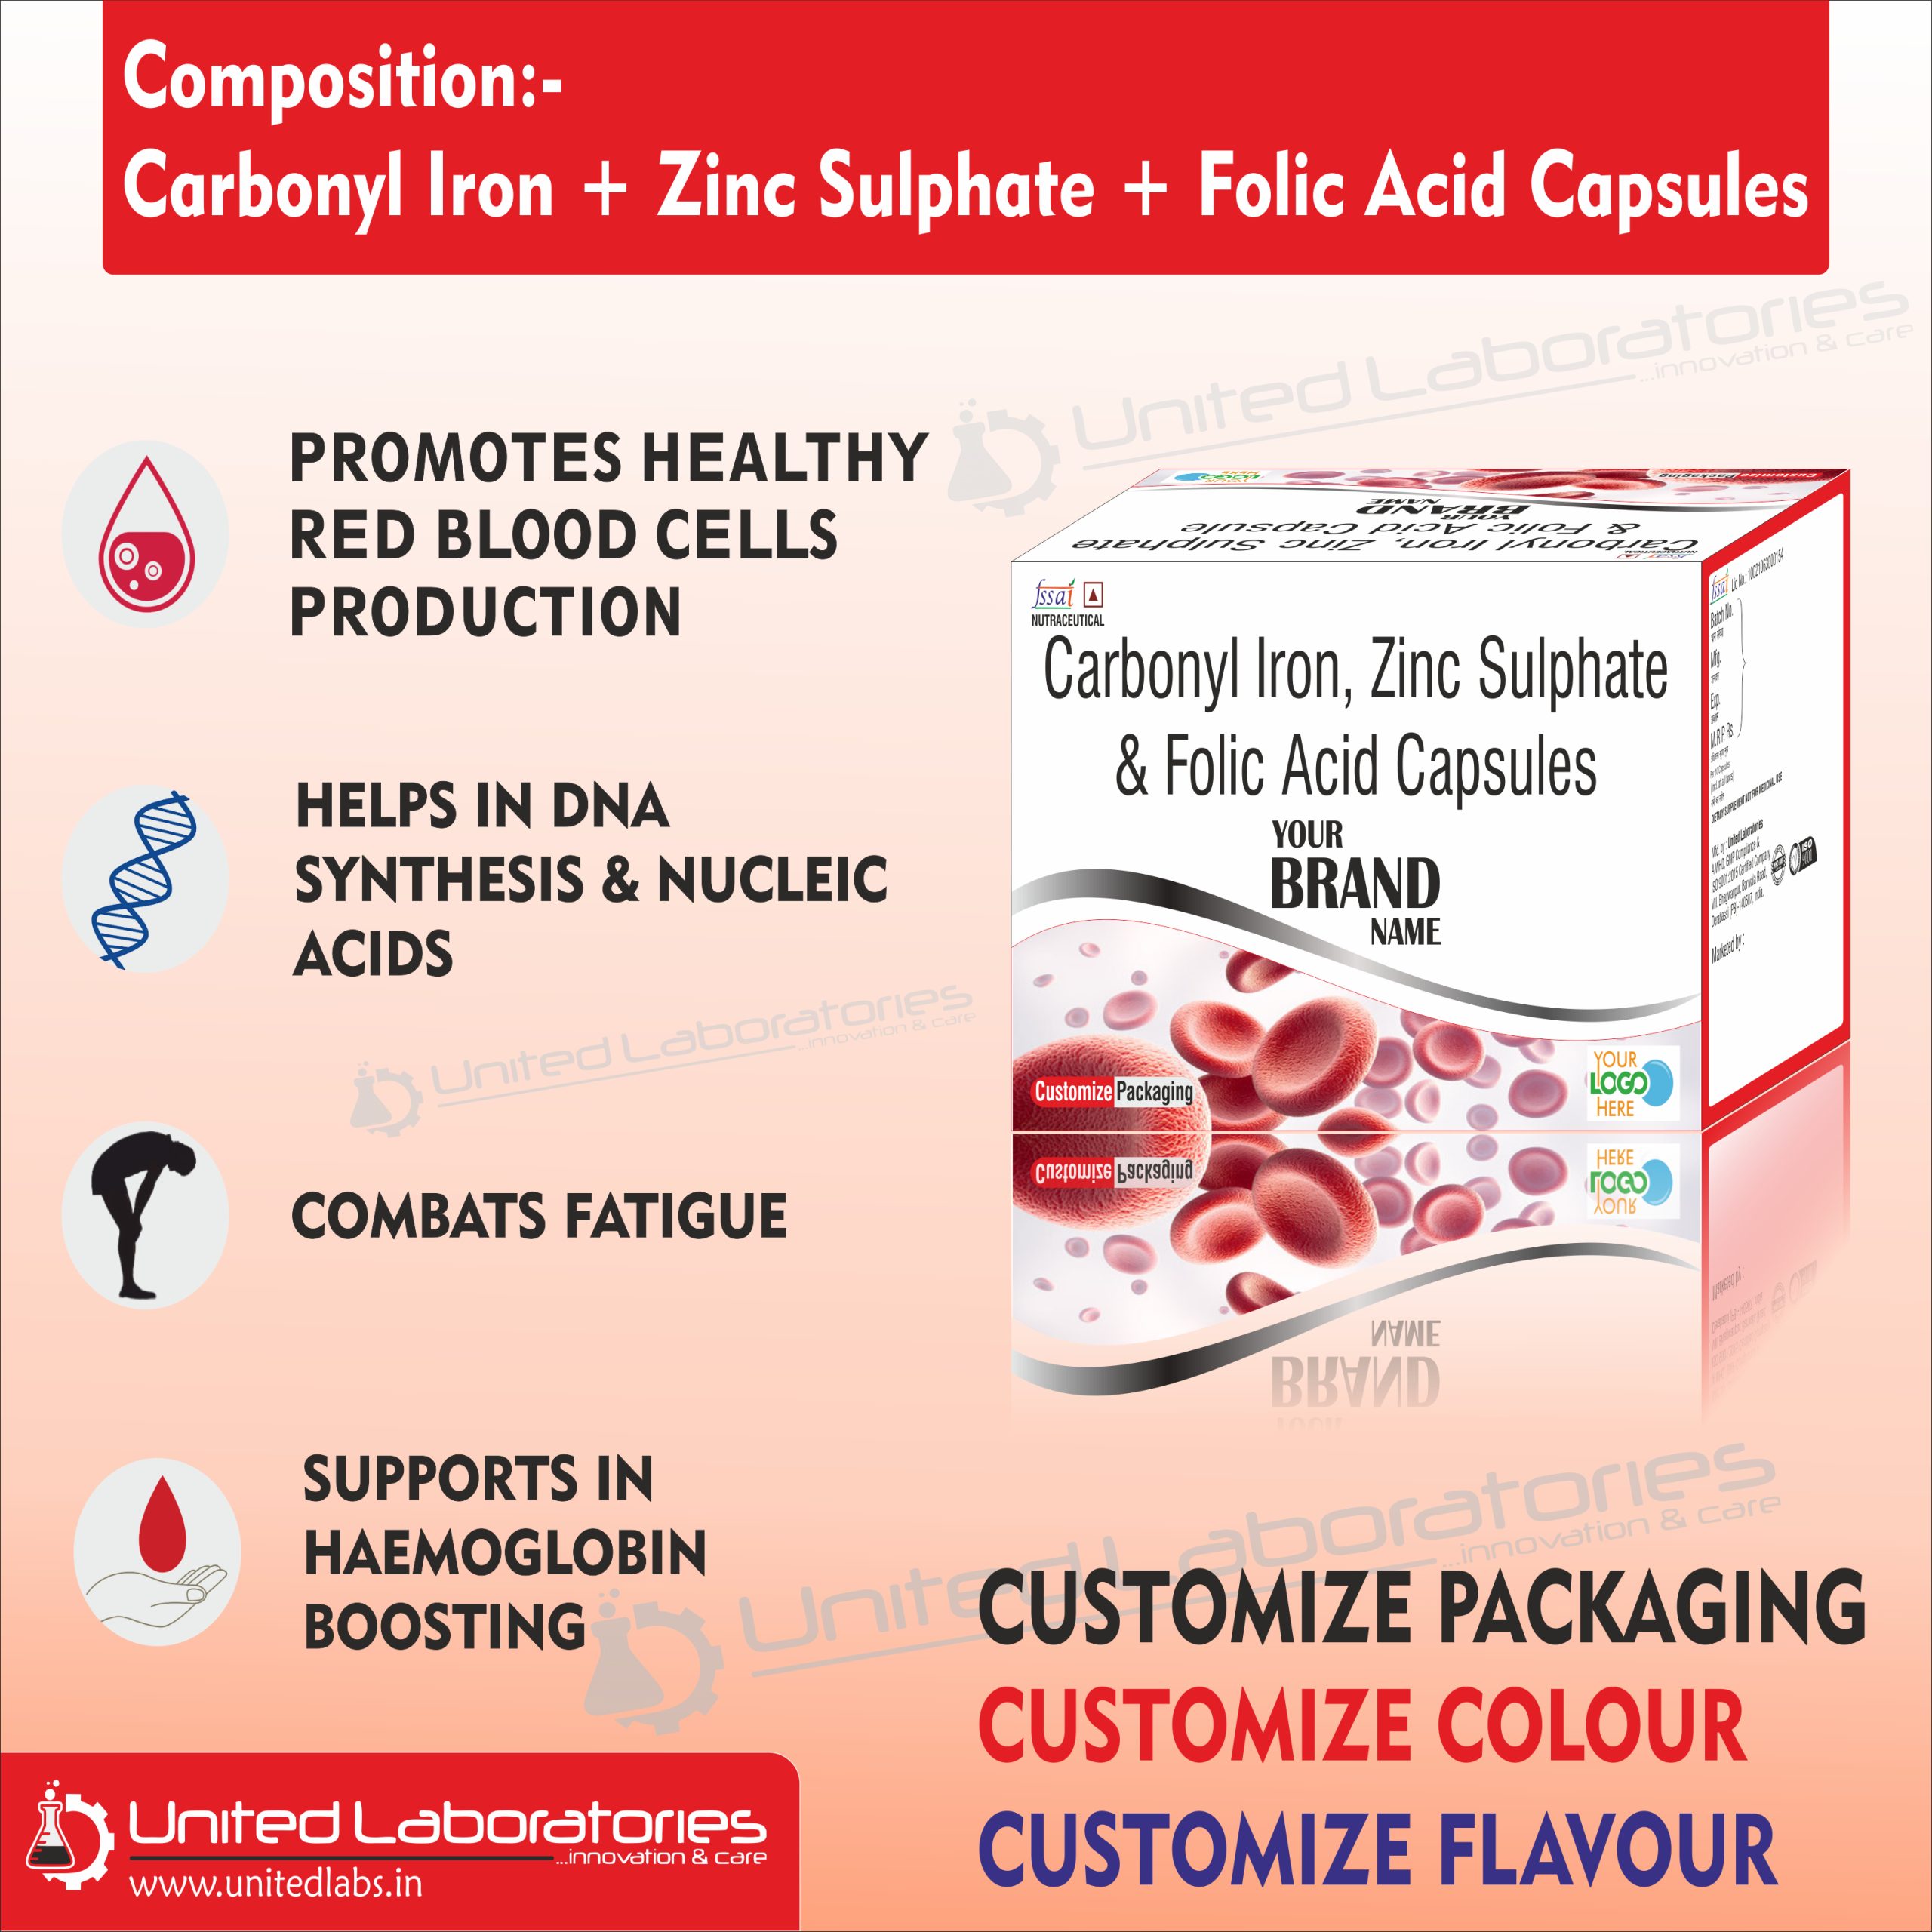 Carbonyl Iron + Zinc Sulphate + Folic Acid Capsules